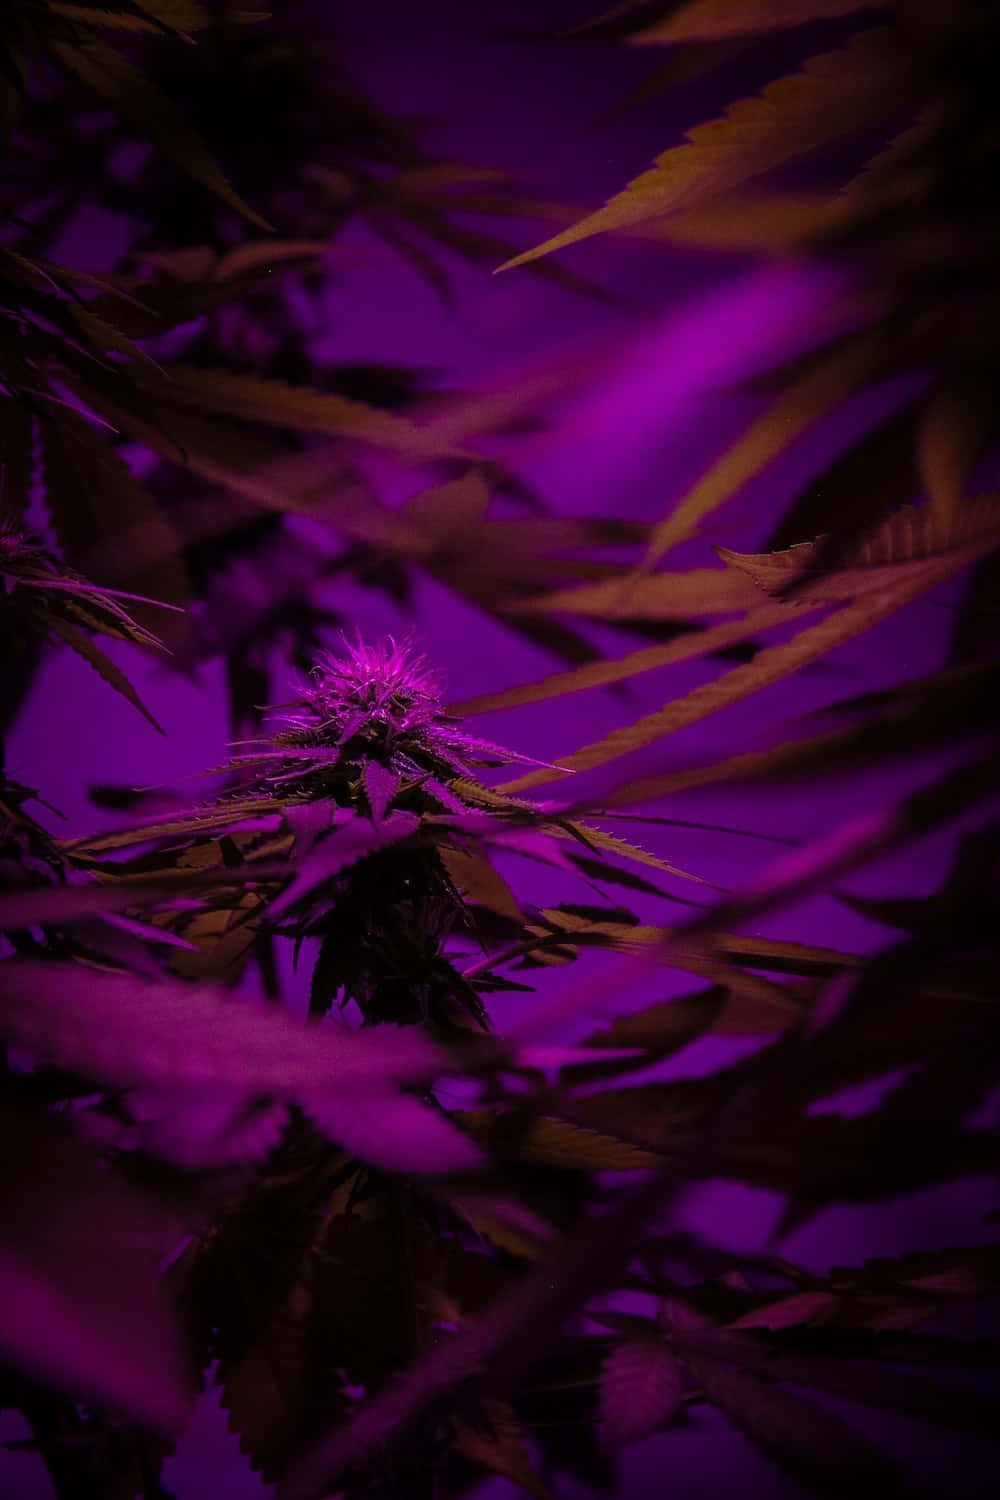 A cannabis plant under a purple light - Violet